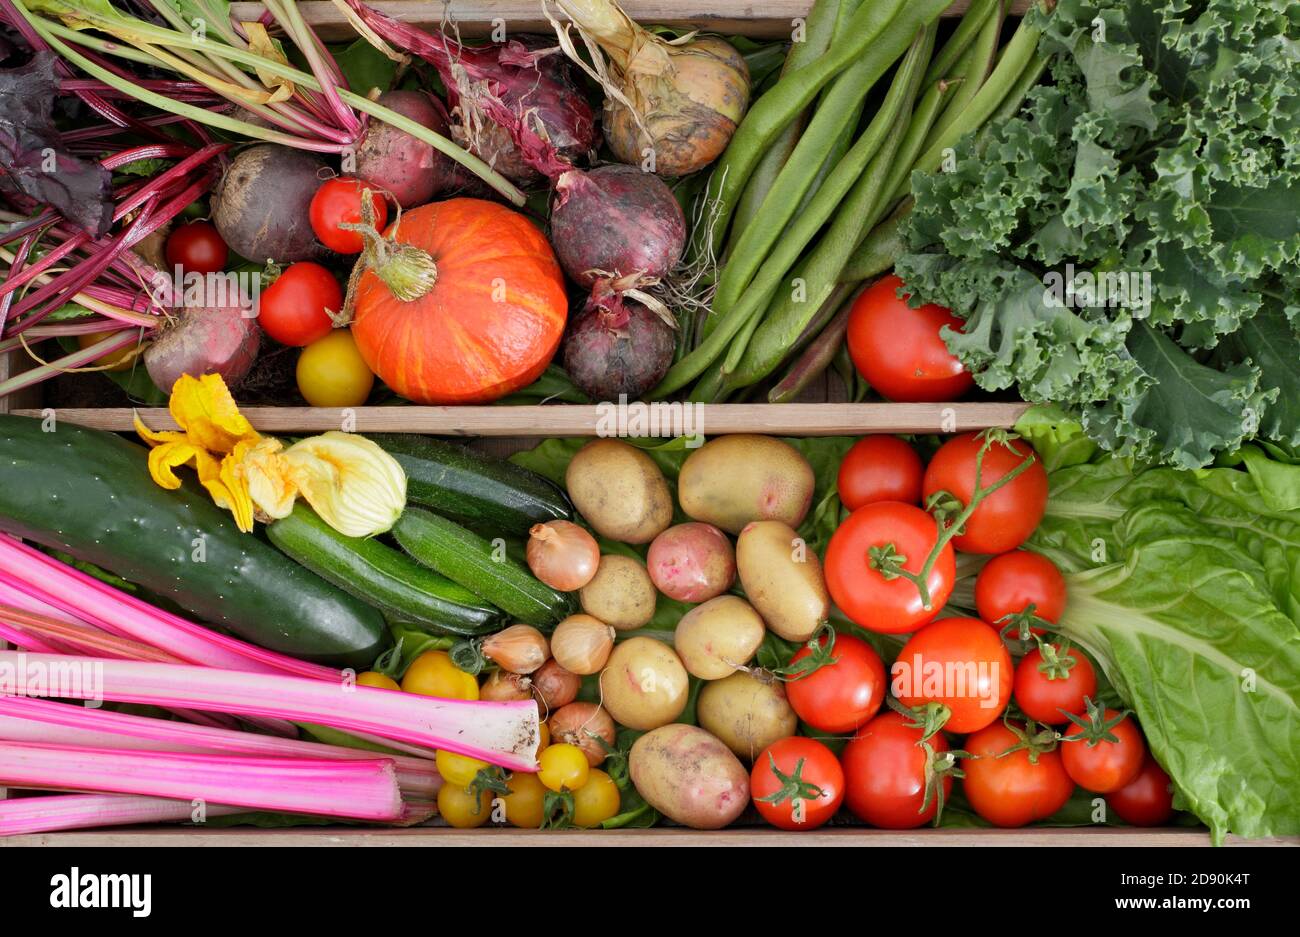 Prodotti coltivati in casa coltivati in un giardino inglese. Bietole, cetrioli, zucchine, zucca, fagioli, pomodori, kale, barbabietole, cipolle, patate. Foto Stock